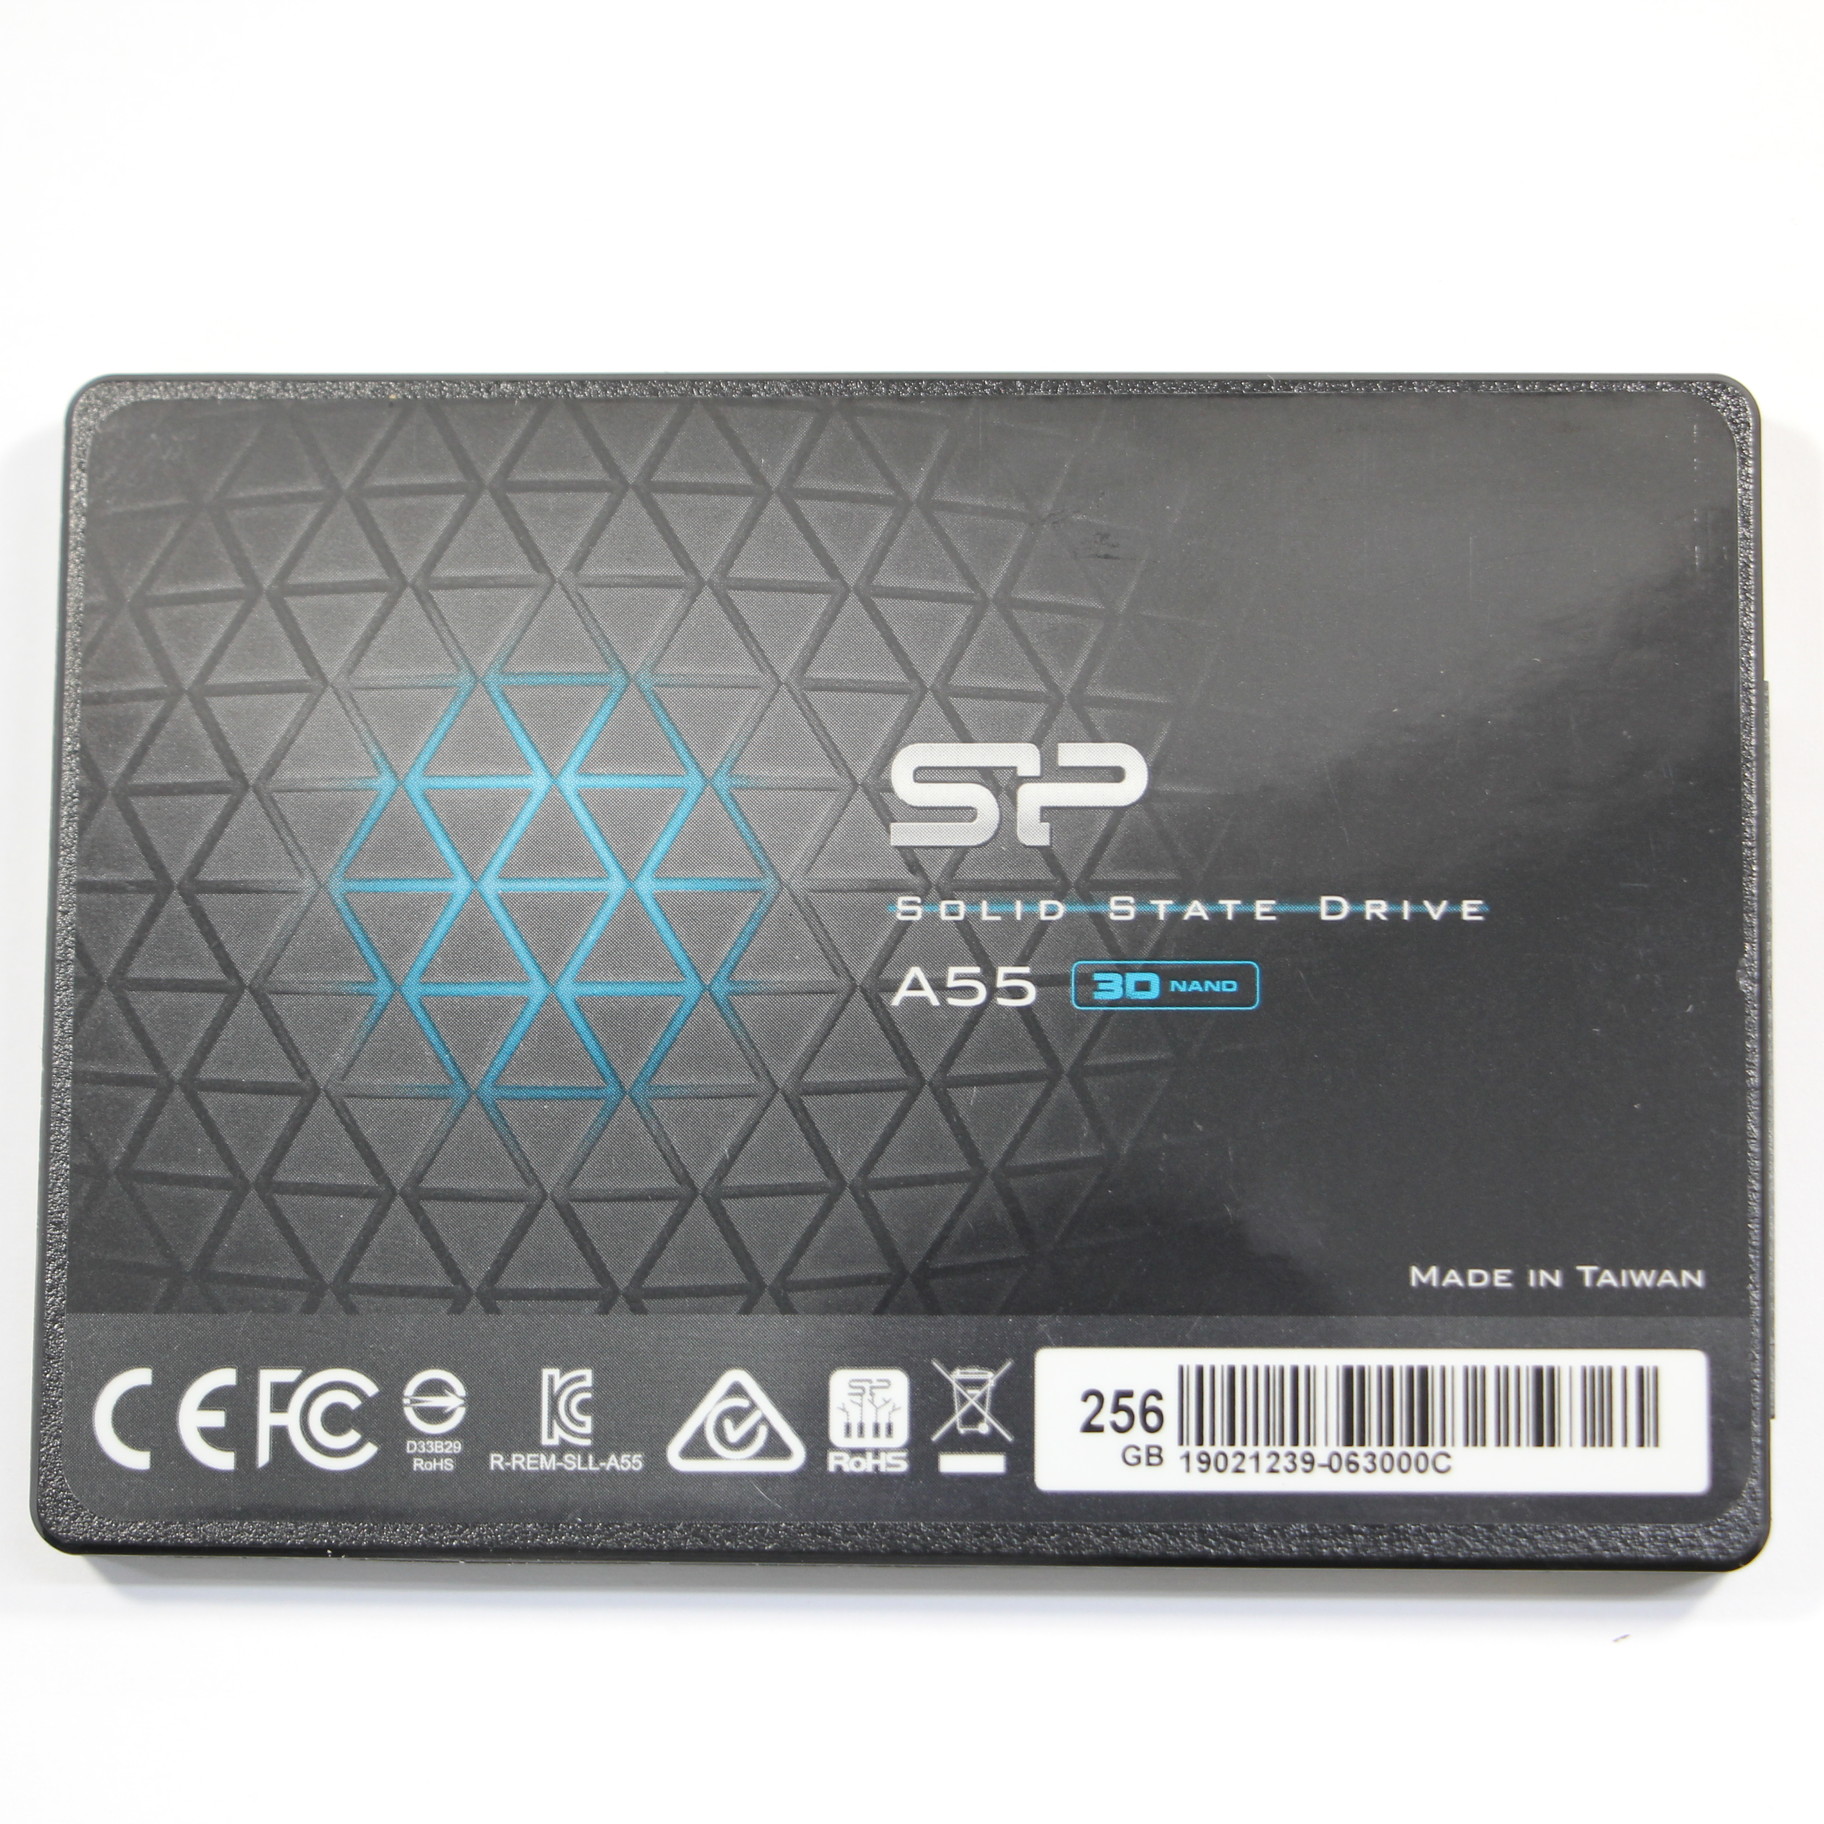 【SSD 256GB】シリコンパワー Ace A55